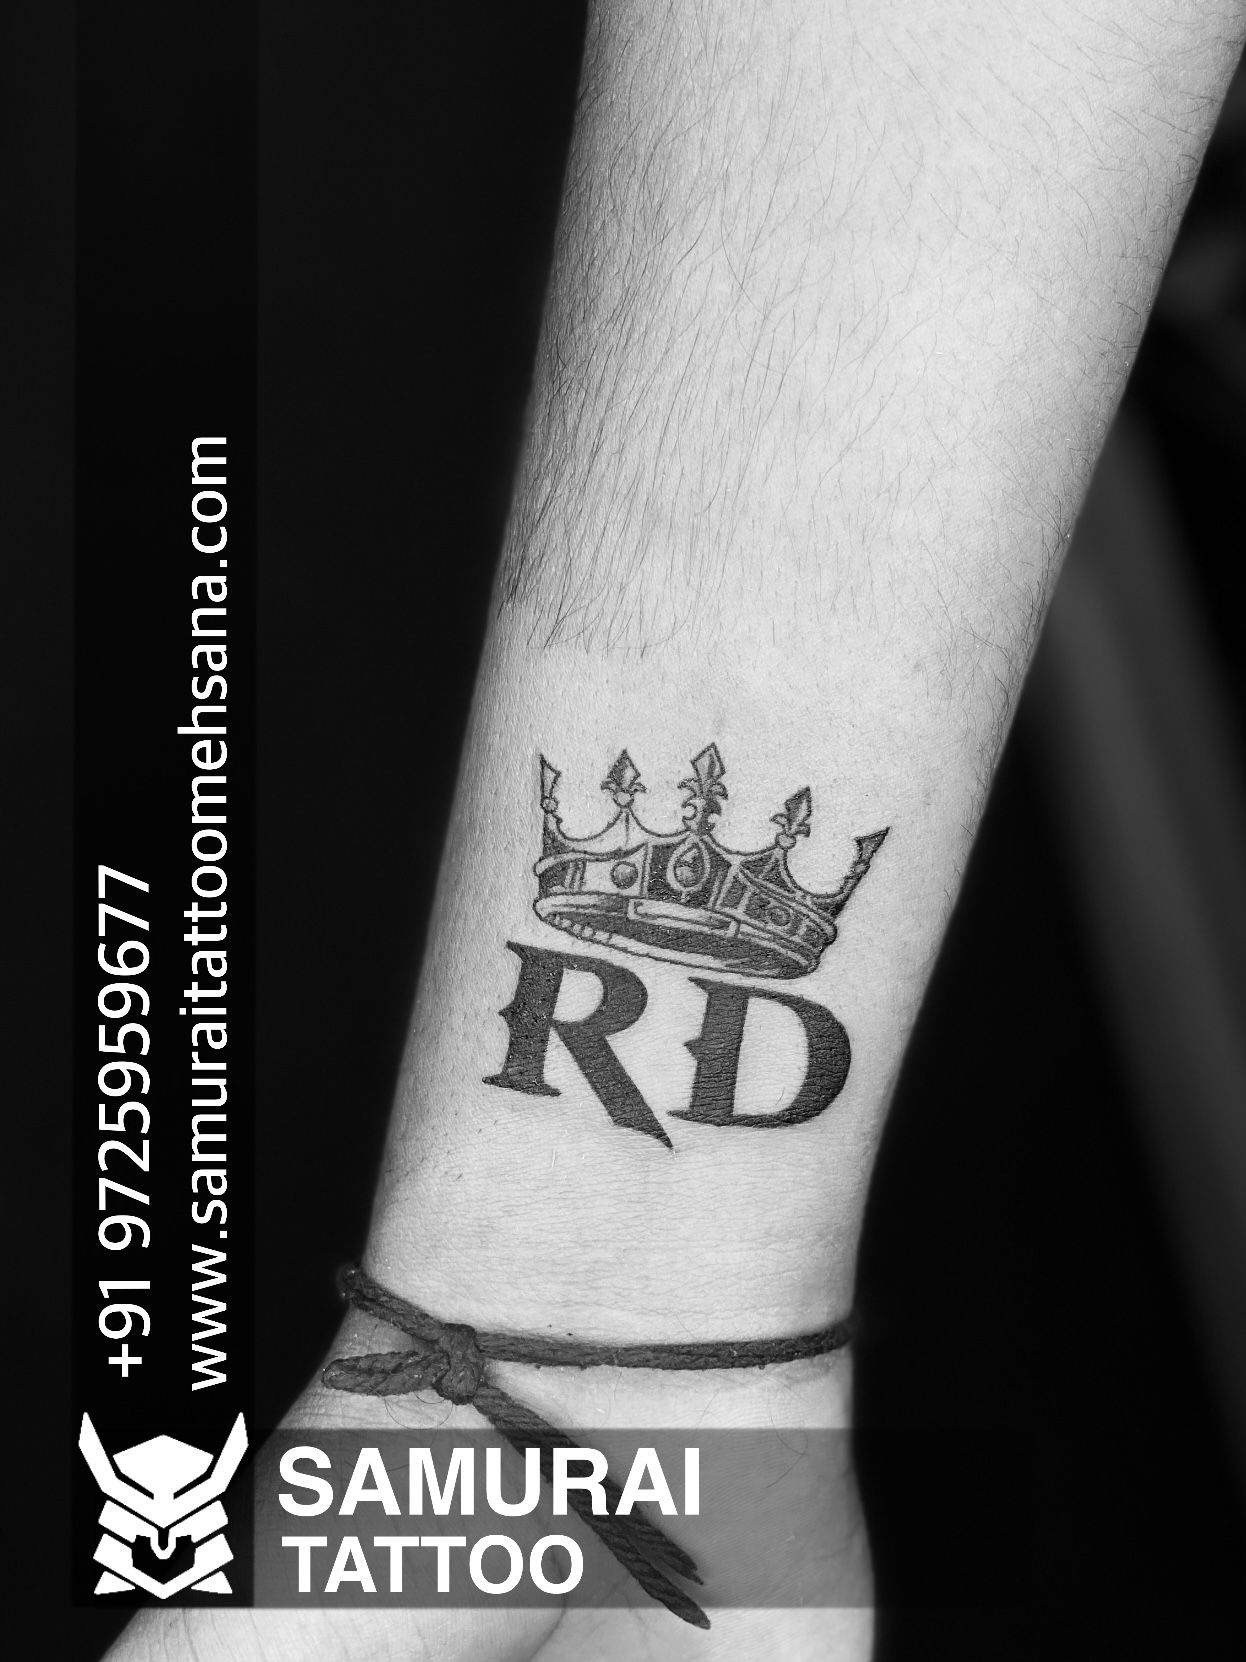 Minimalist road tattoo on an arm by Chinatown Stropky - Tattoogrid.net